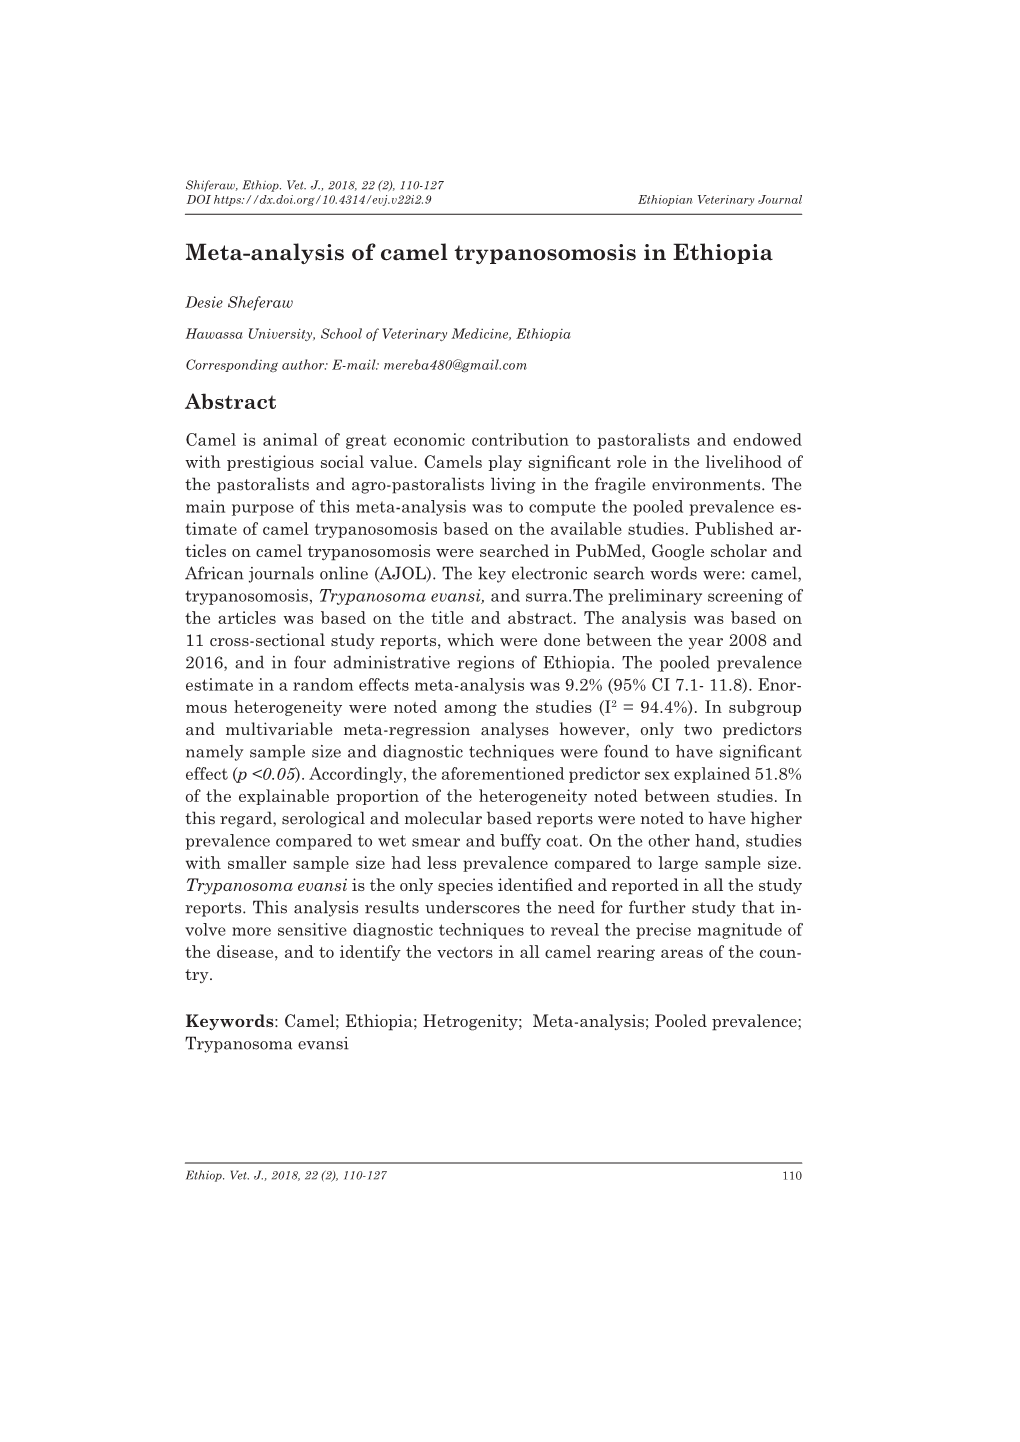 Meta-Analysis of Camel Trypanosomosis in Ethiopia